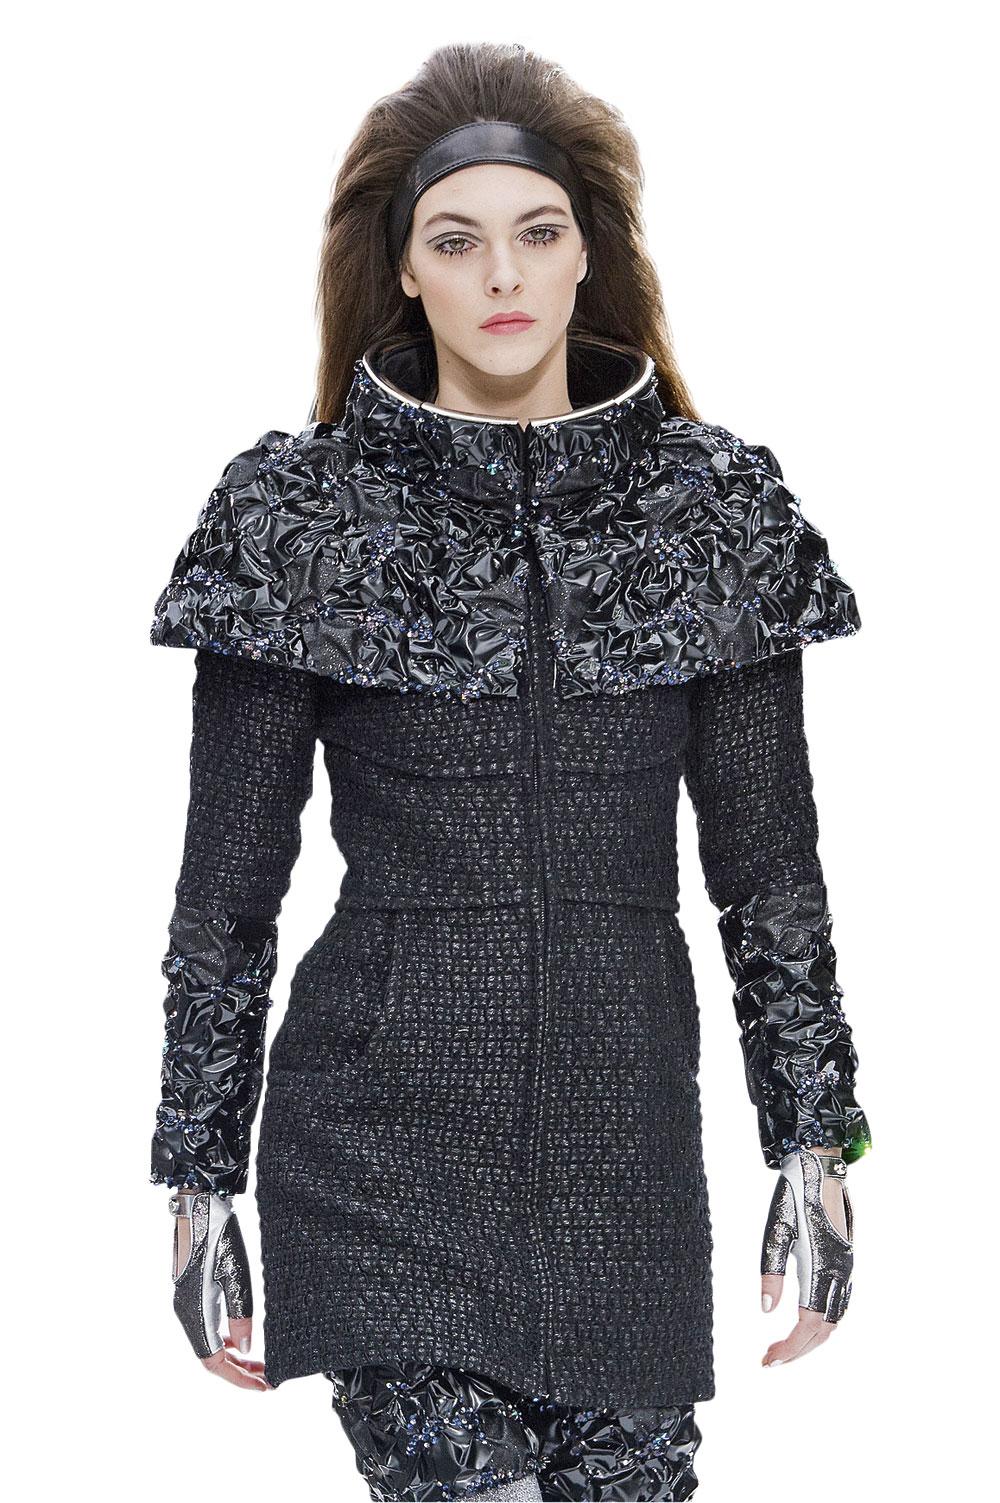 Coco Chanel a popularisé le noir en détournant la robe de deuil. Aujourd'hui encore, dans la collection automne-hiver 17-18, on retrouve cette non-couleur.